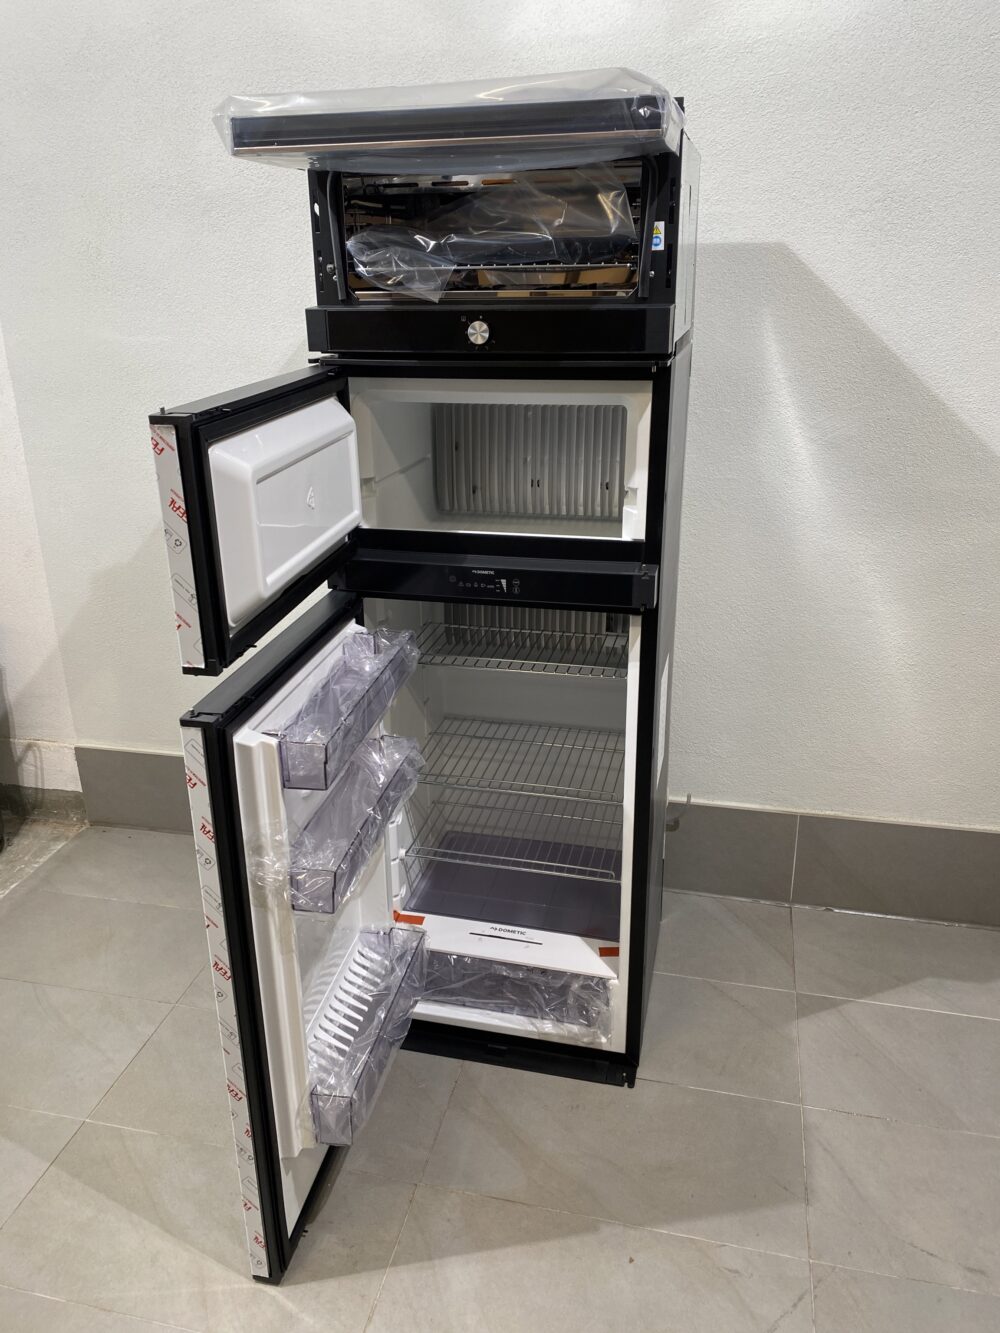 Dometic RMDT 10.5 x Kühlschrank mit Gefrierfach und Backofen